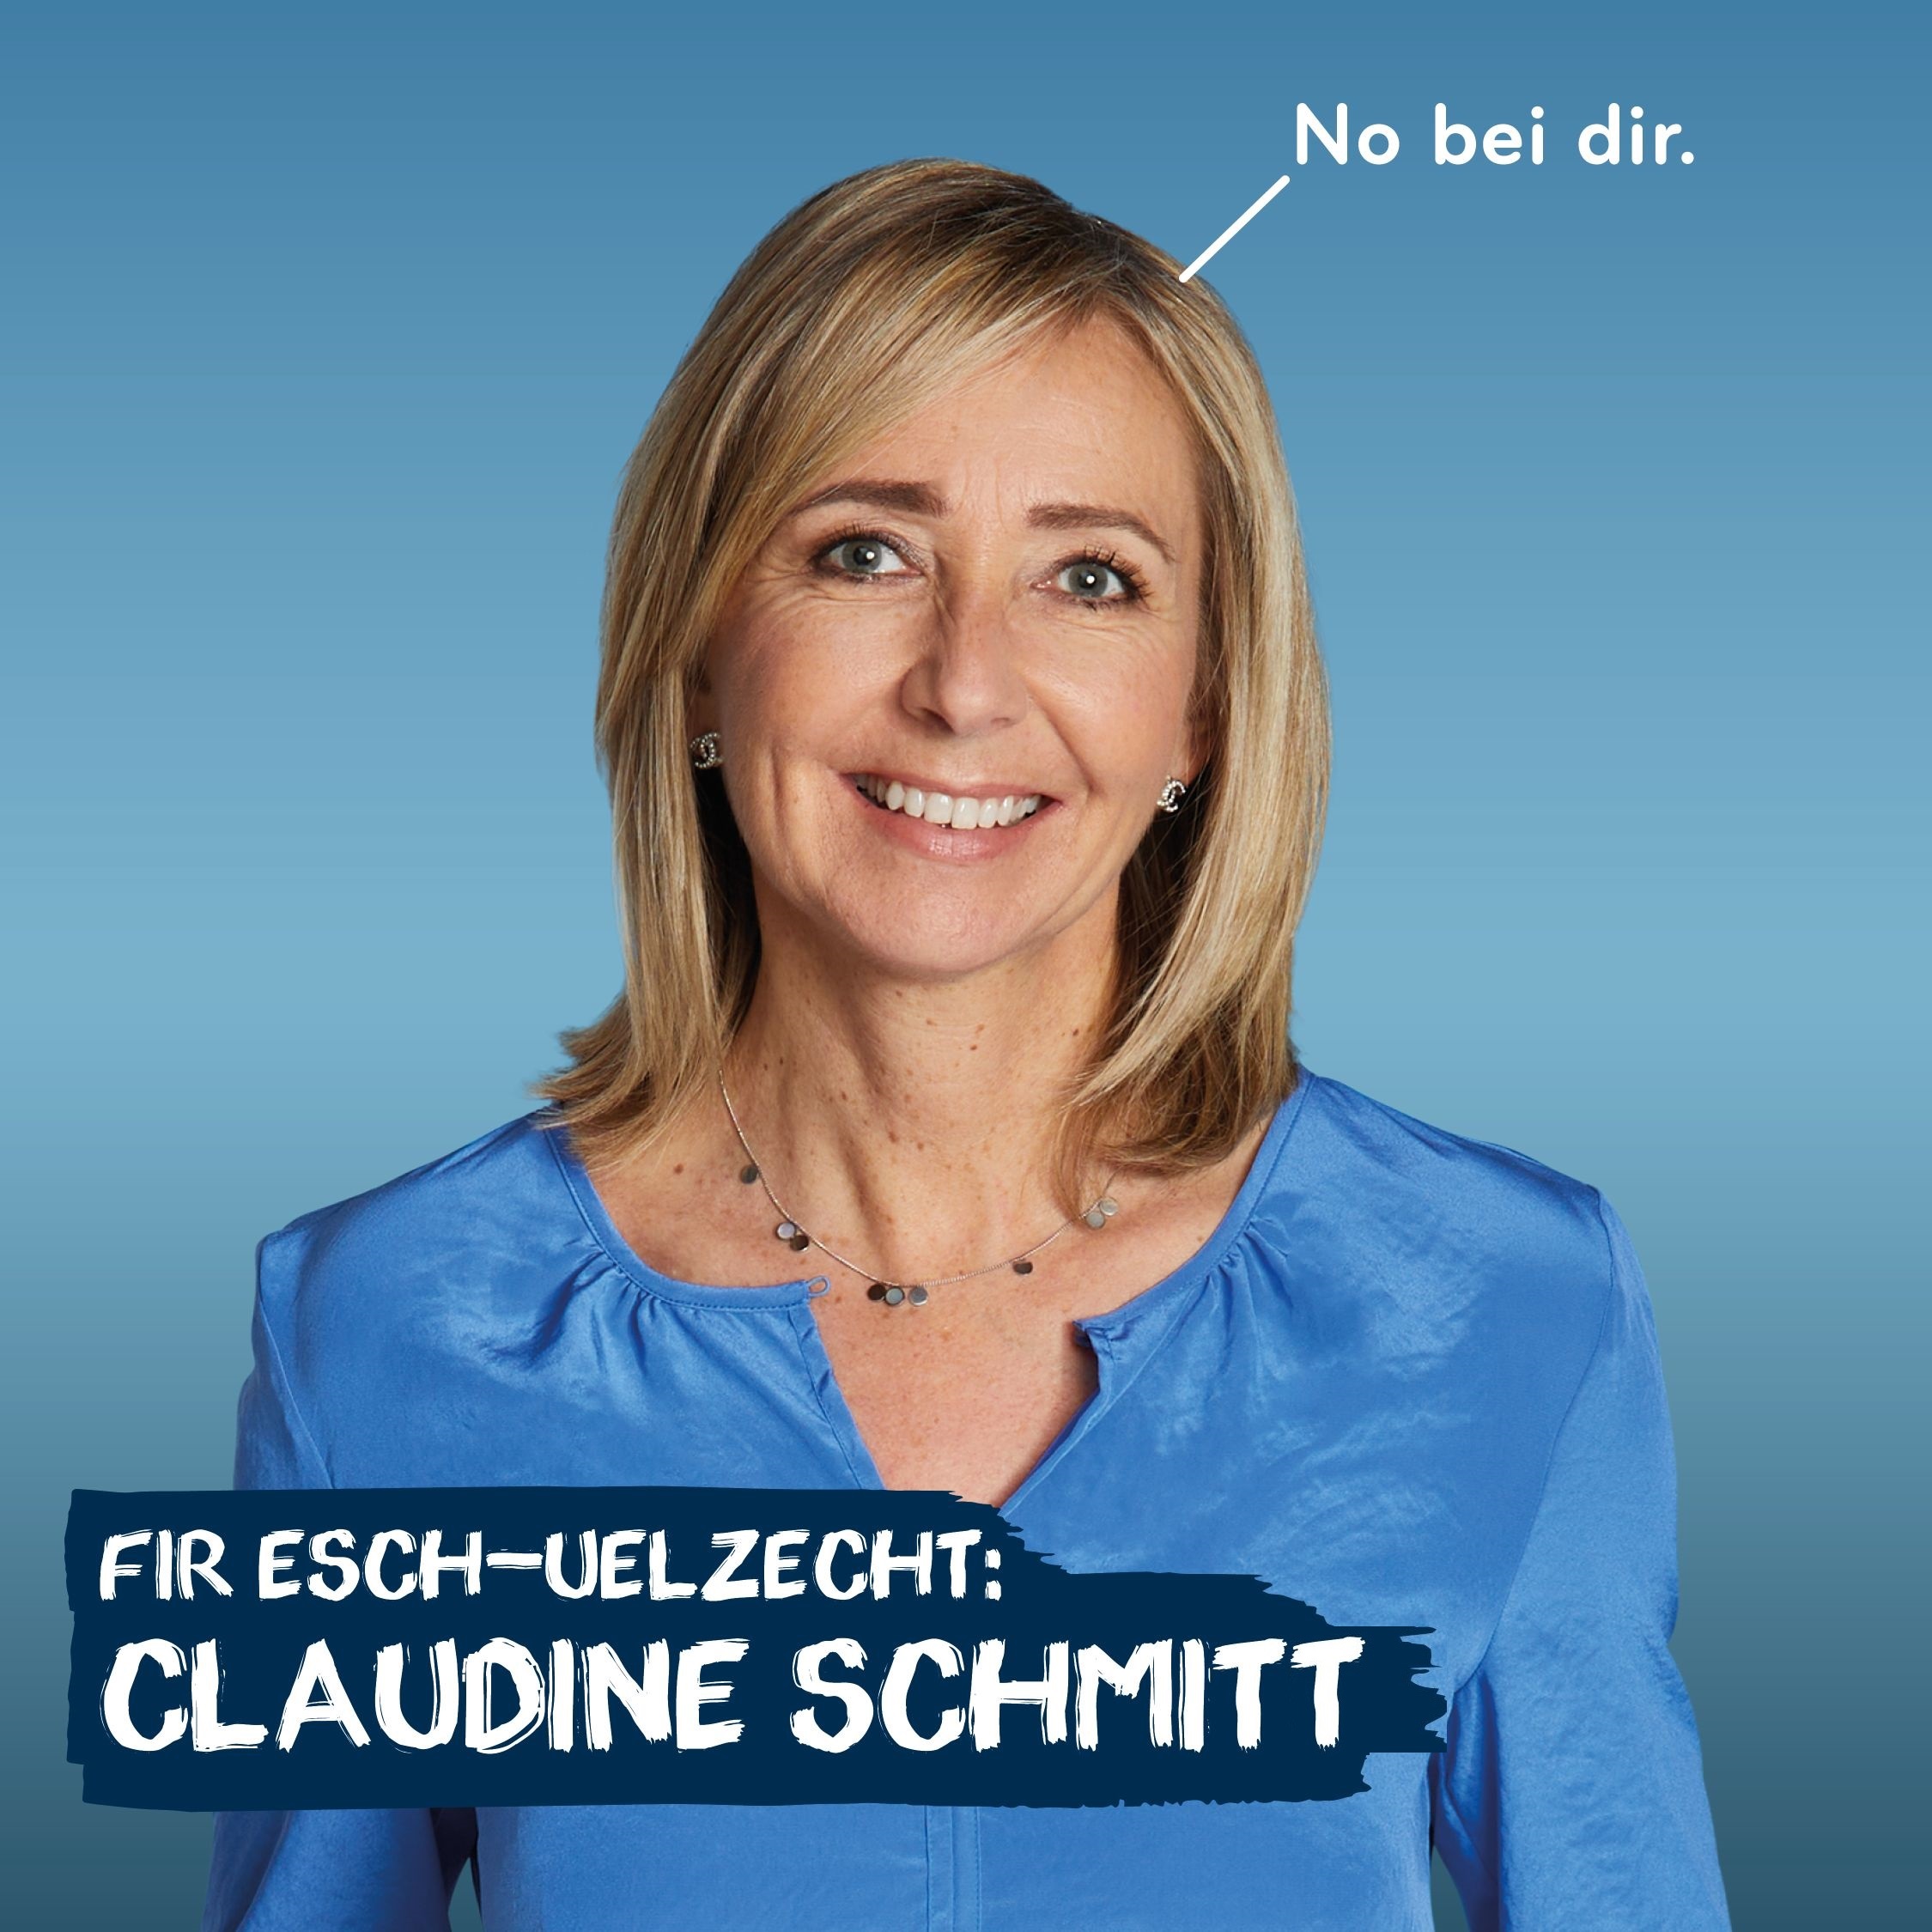 Claudine Schmitt